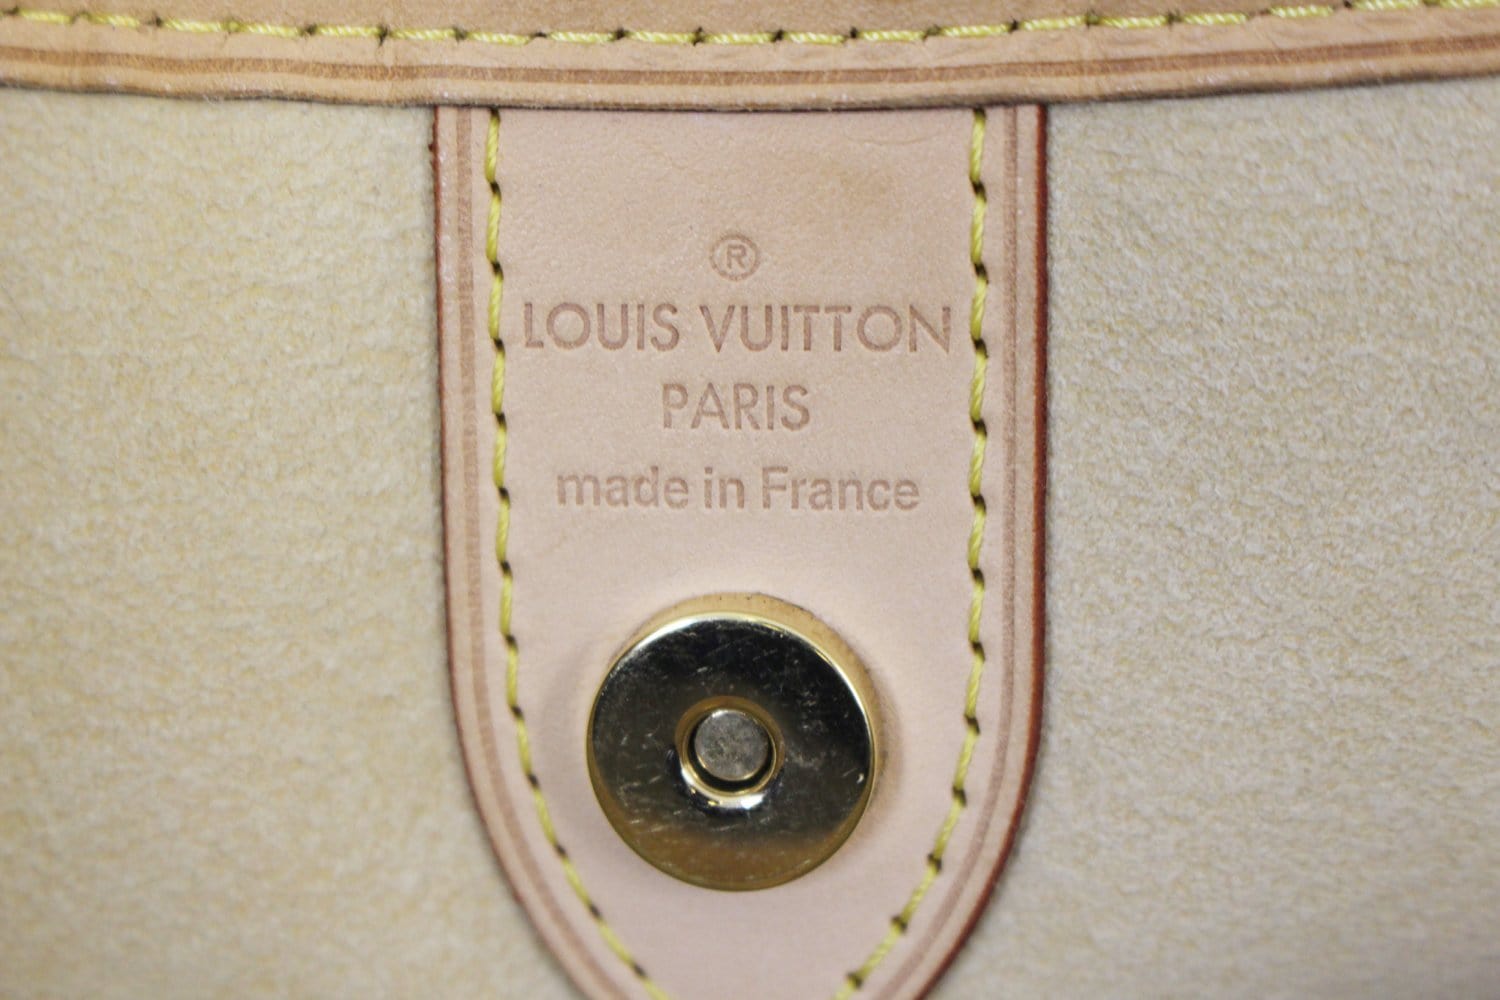 Authentic Louis Vuitton Damier Azur Galliera PM Shoulder Bag – Italy Station